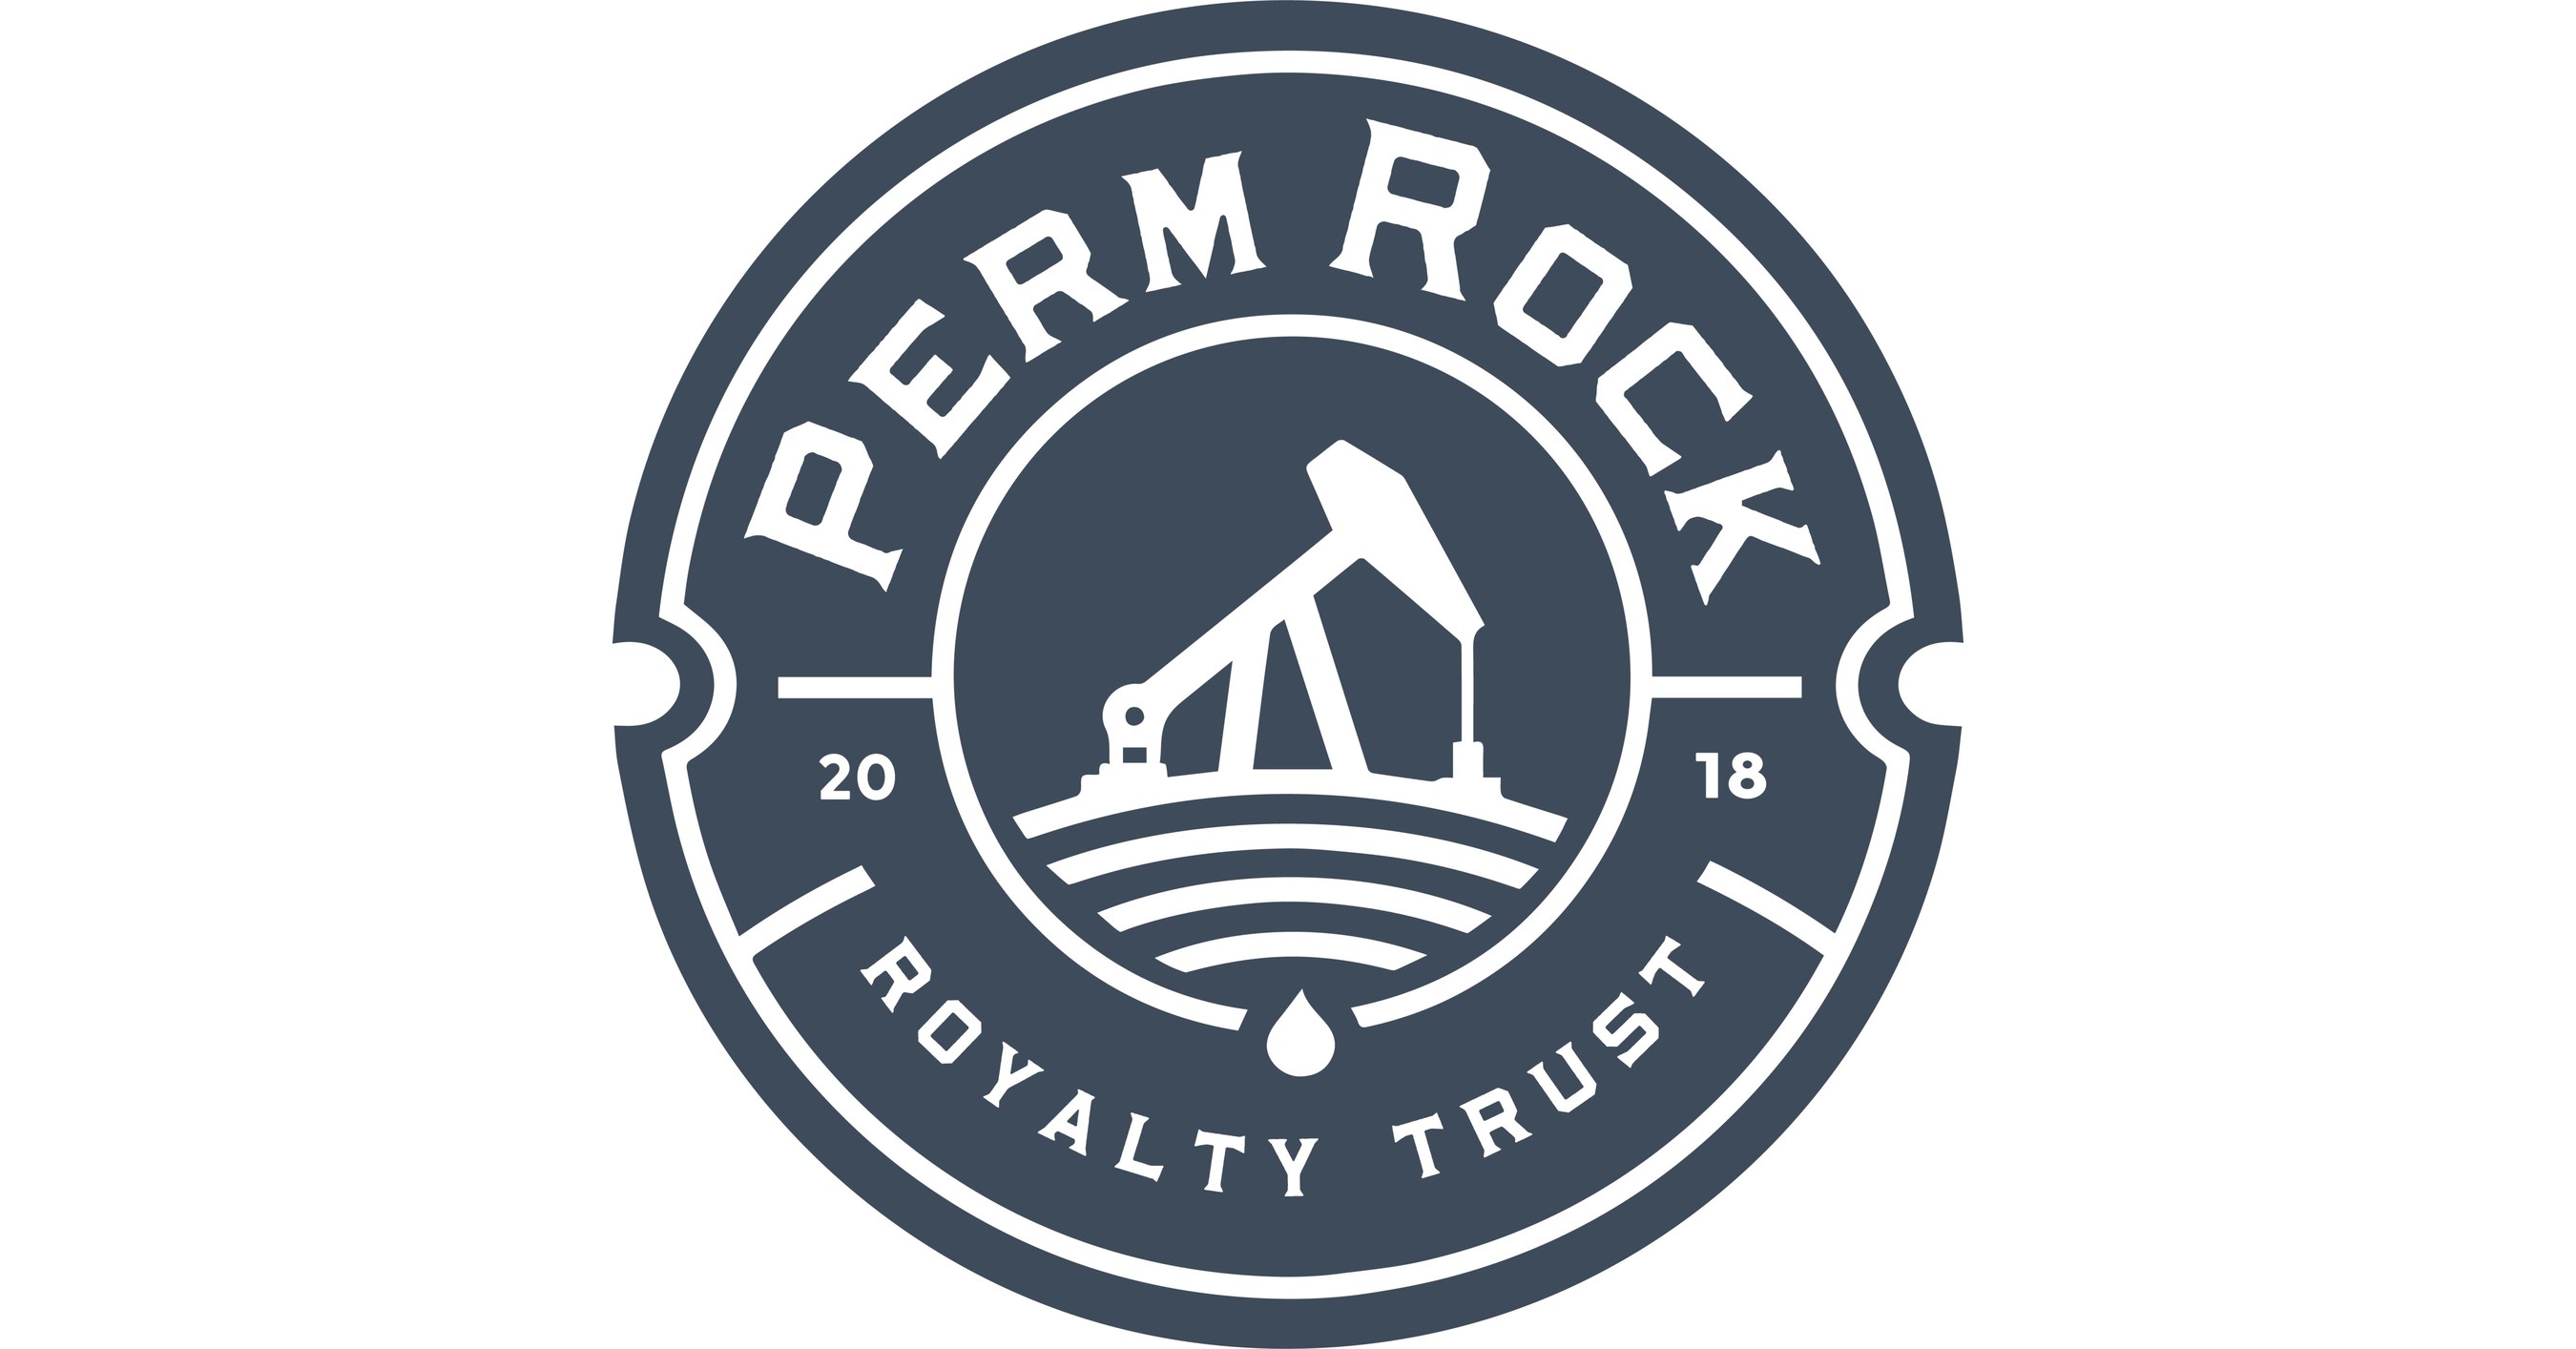 PermRock Royalty Trust